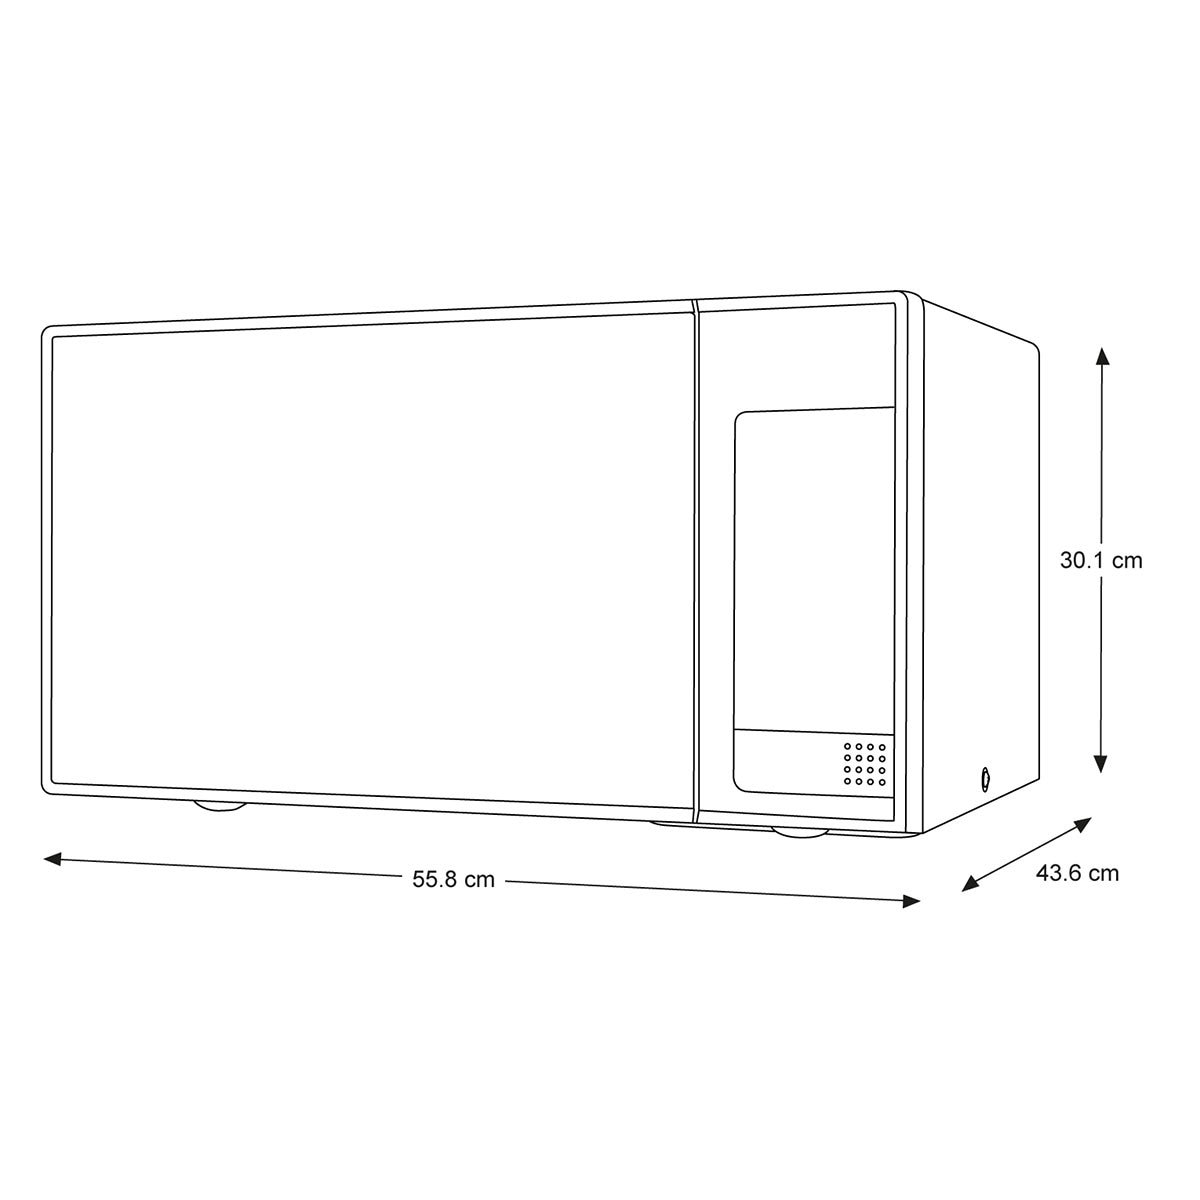 Samsung horno de microondas 1.4' con grill